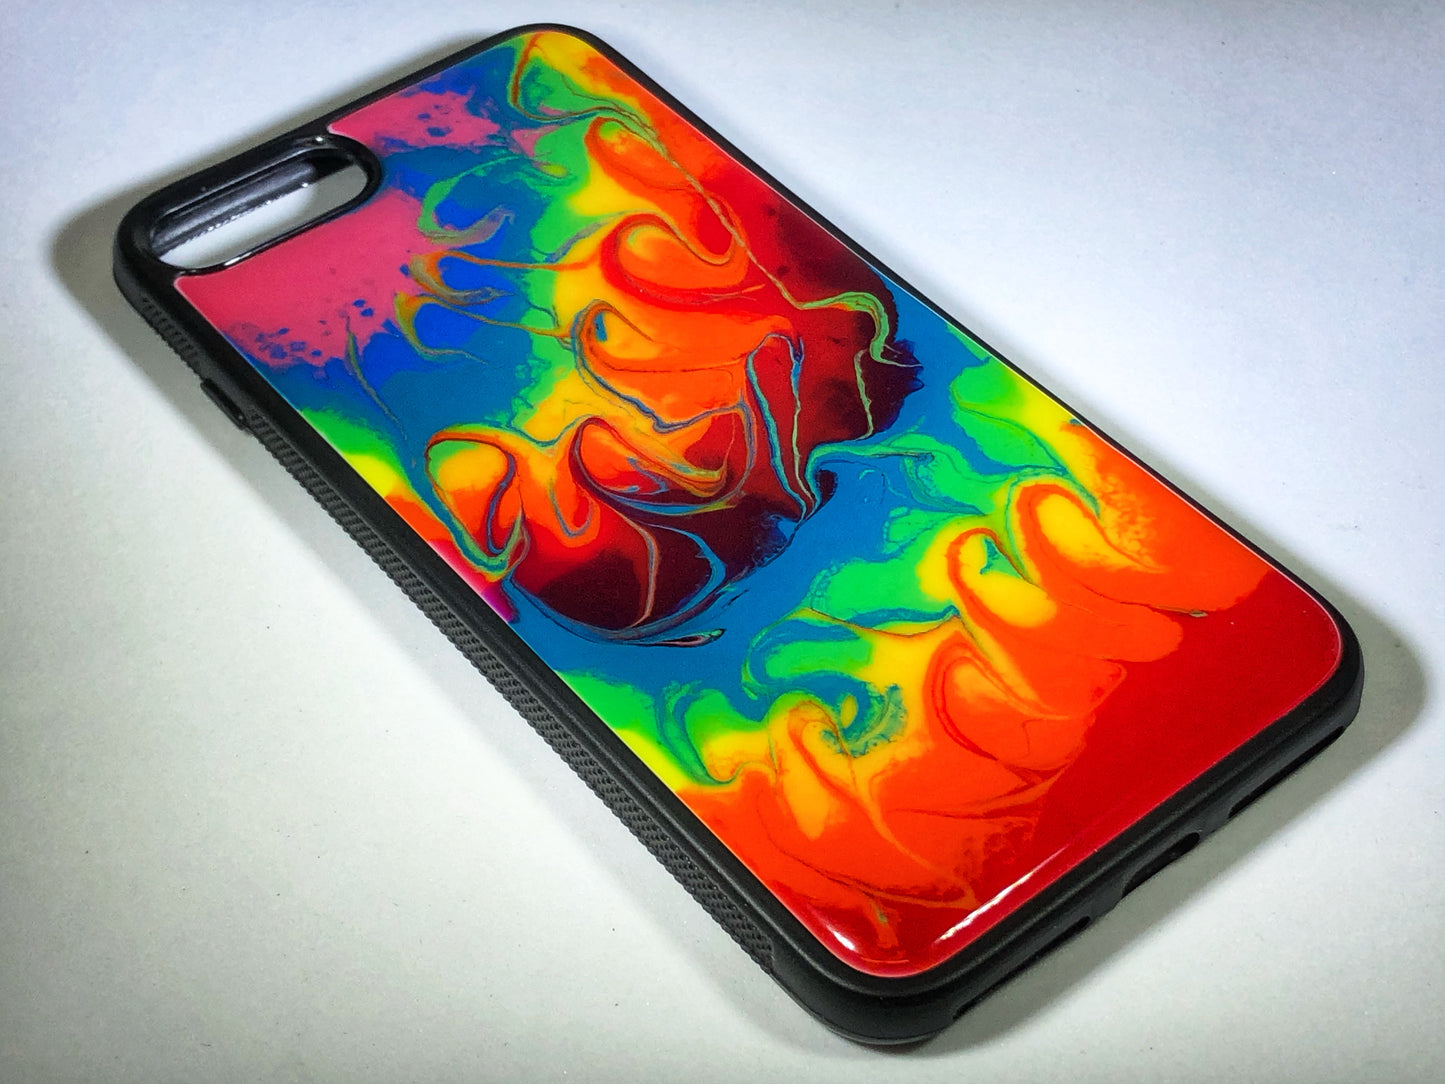 iPhone 7/8 Plus Phone Case - "Tie Dye" Resin